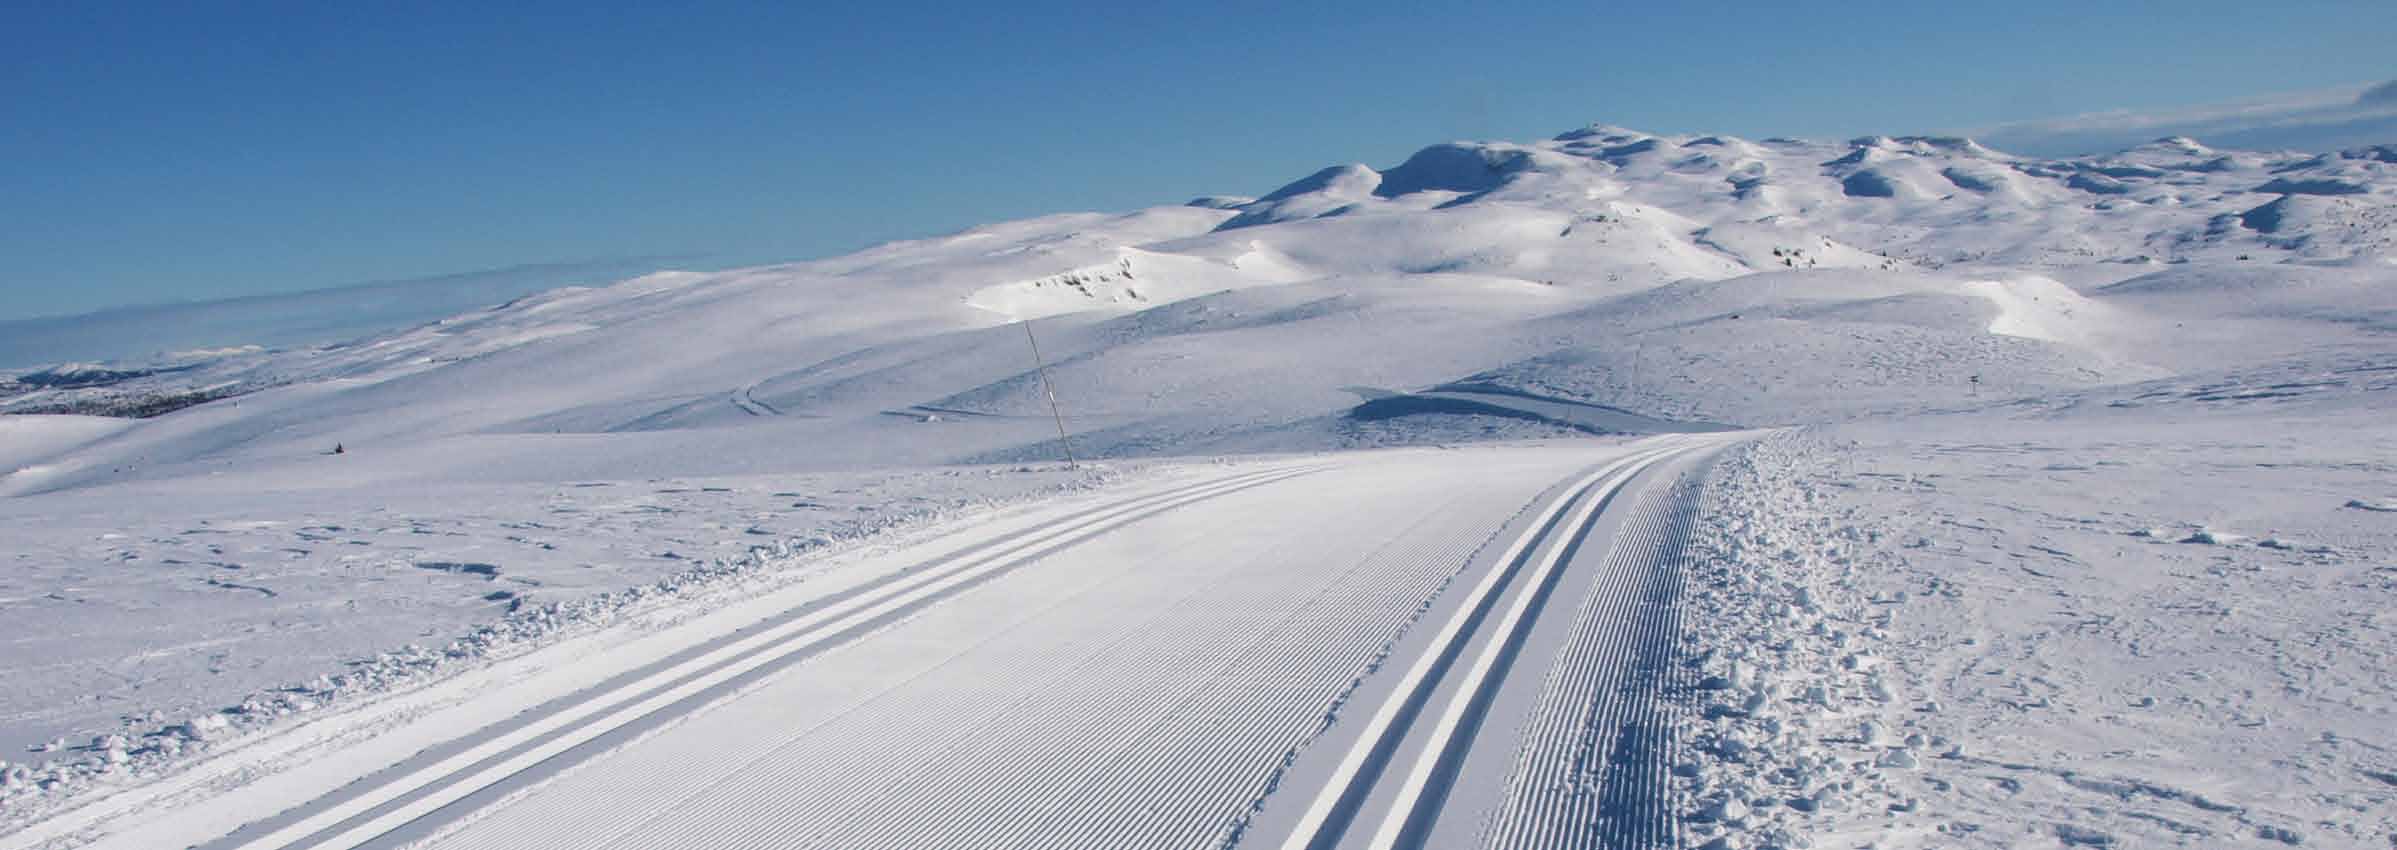 Skiriket Når Norges beste skiløyper inviterer på tur, er det vanskelig å takke nei. Over 300 kilometer spor som tar deg gjennom lunt skogsterreng og opp mot snaufjellet på 1400 meter.